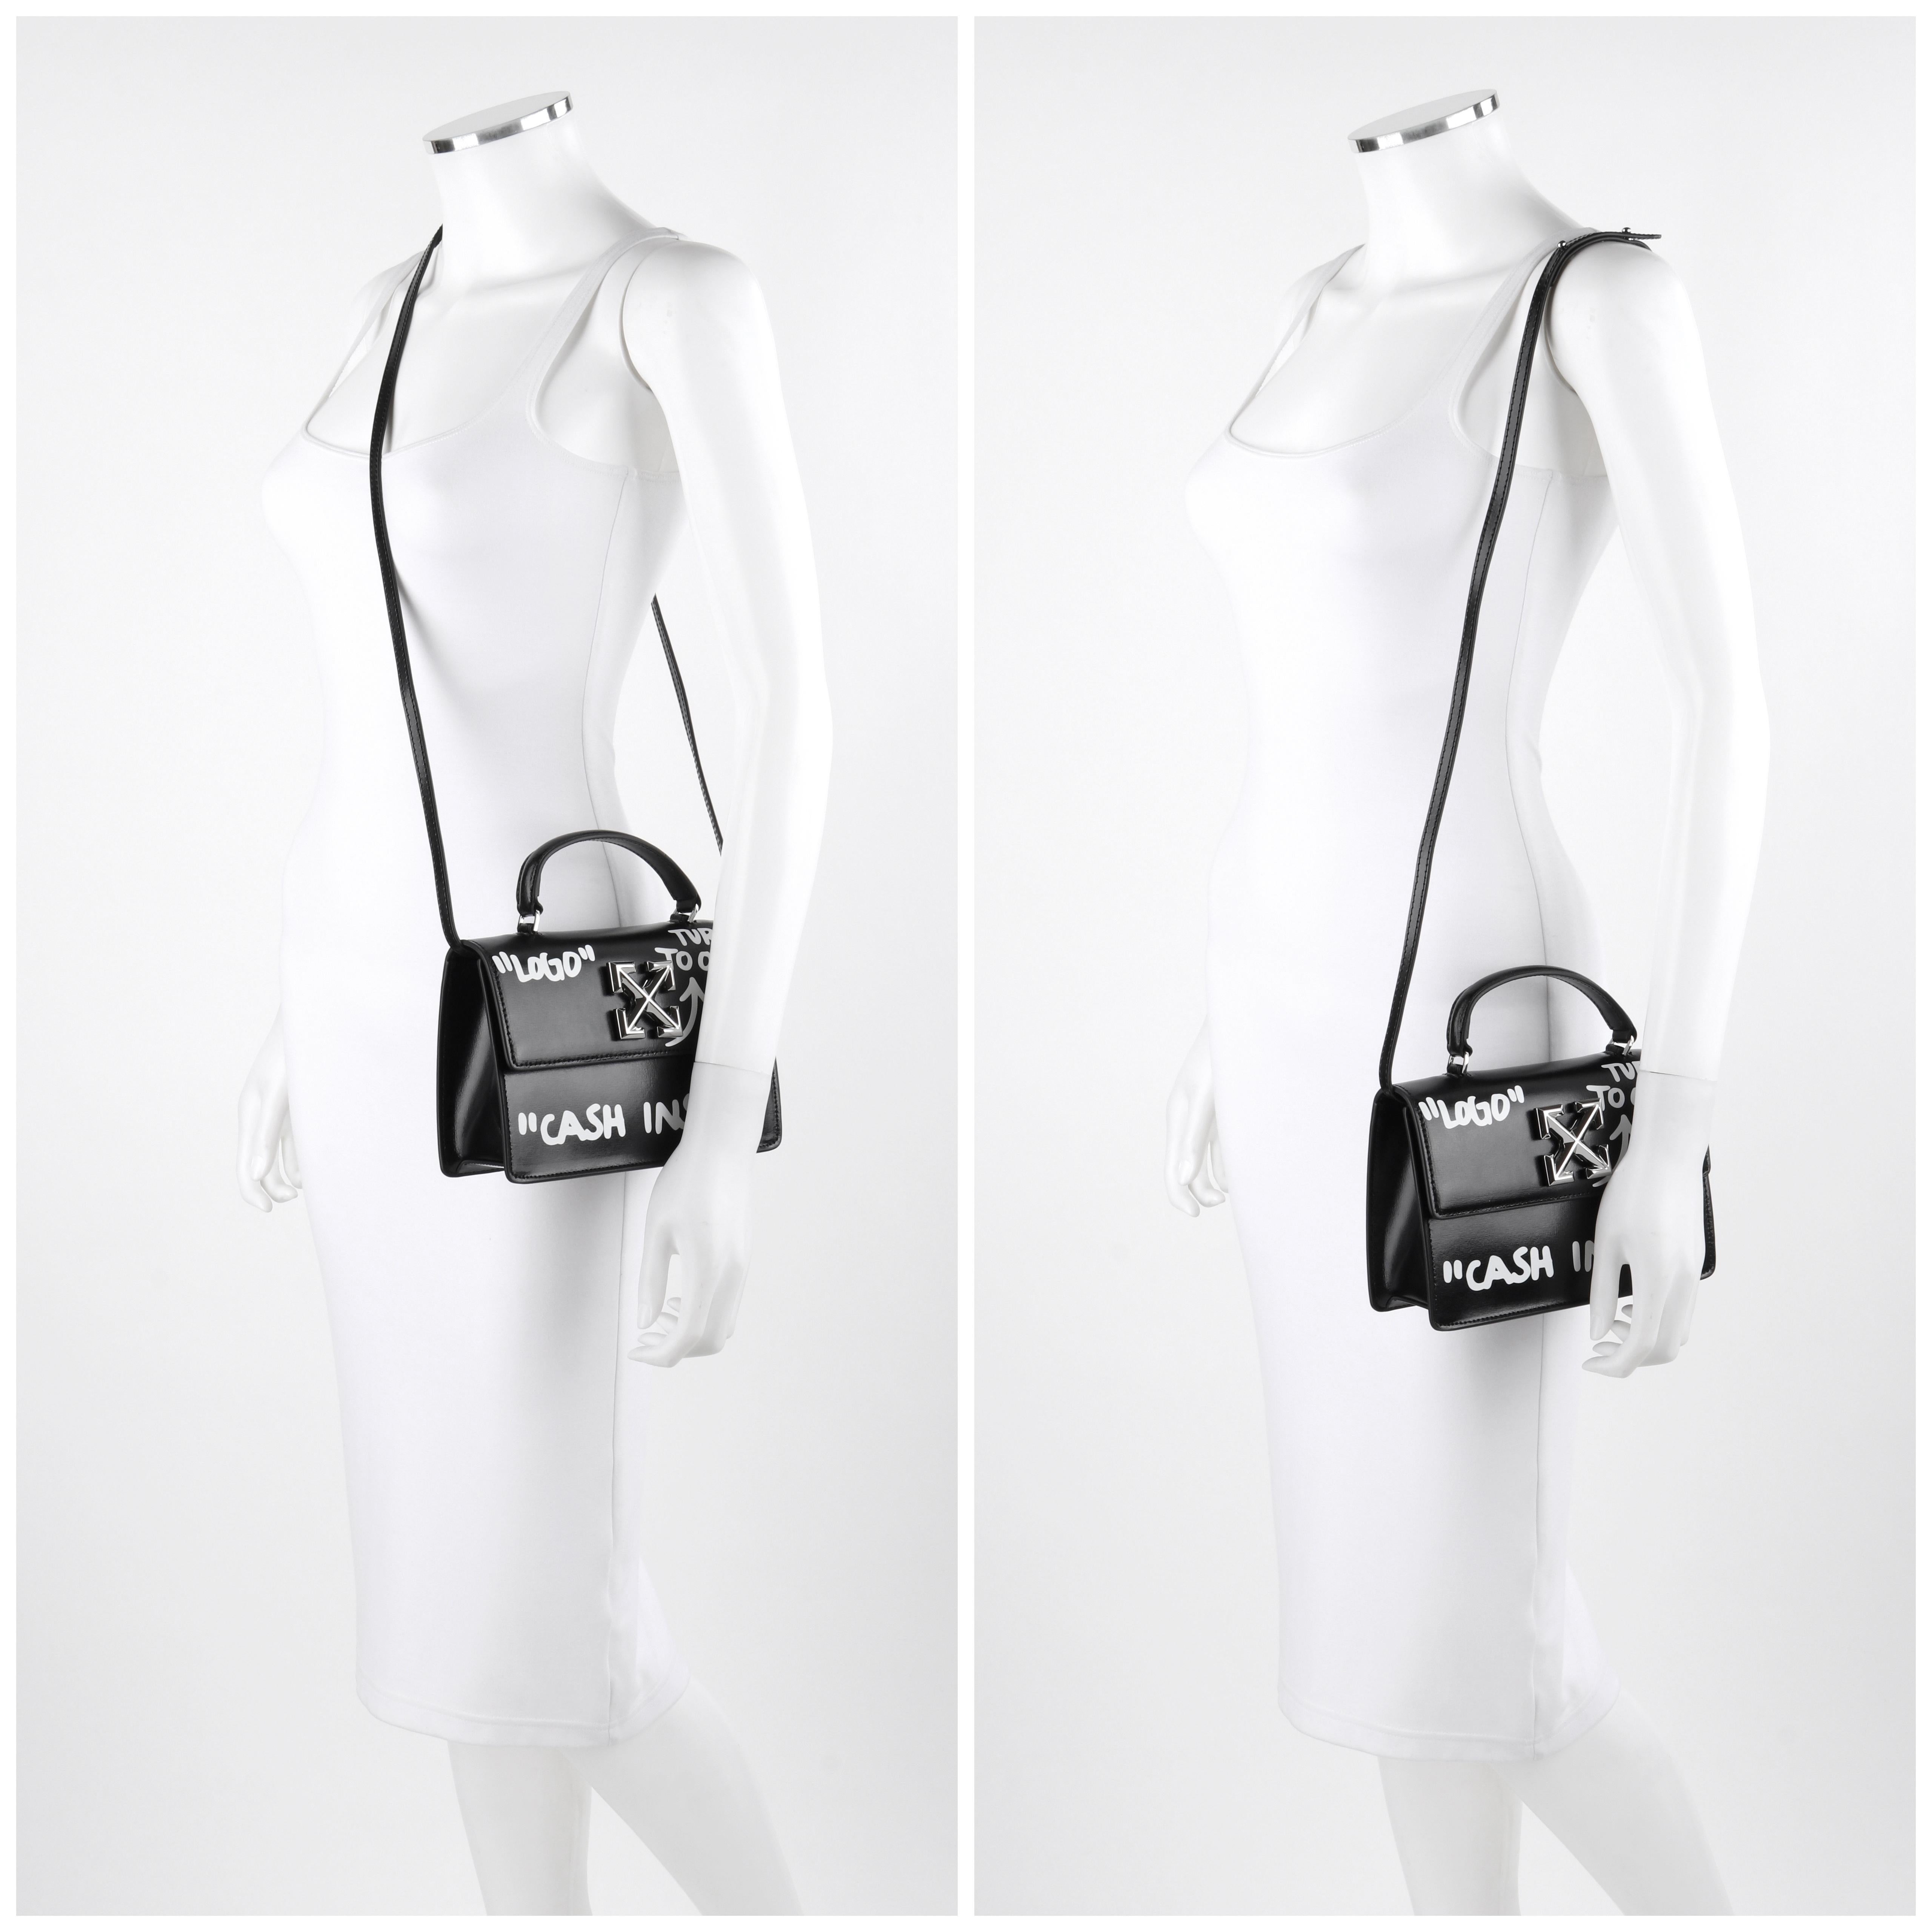 Women's OFF-WHITE c.2019 Jitney 1.4 Black Leather White Cash Inside Graffiti Handbag NWT For Sale